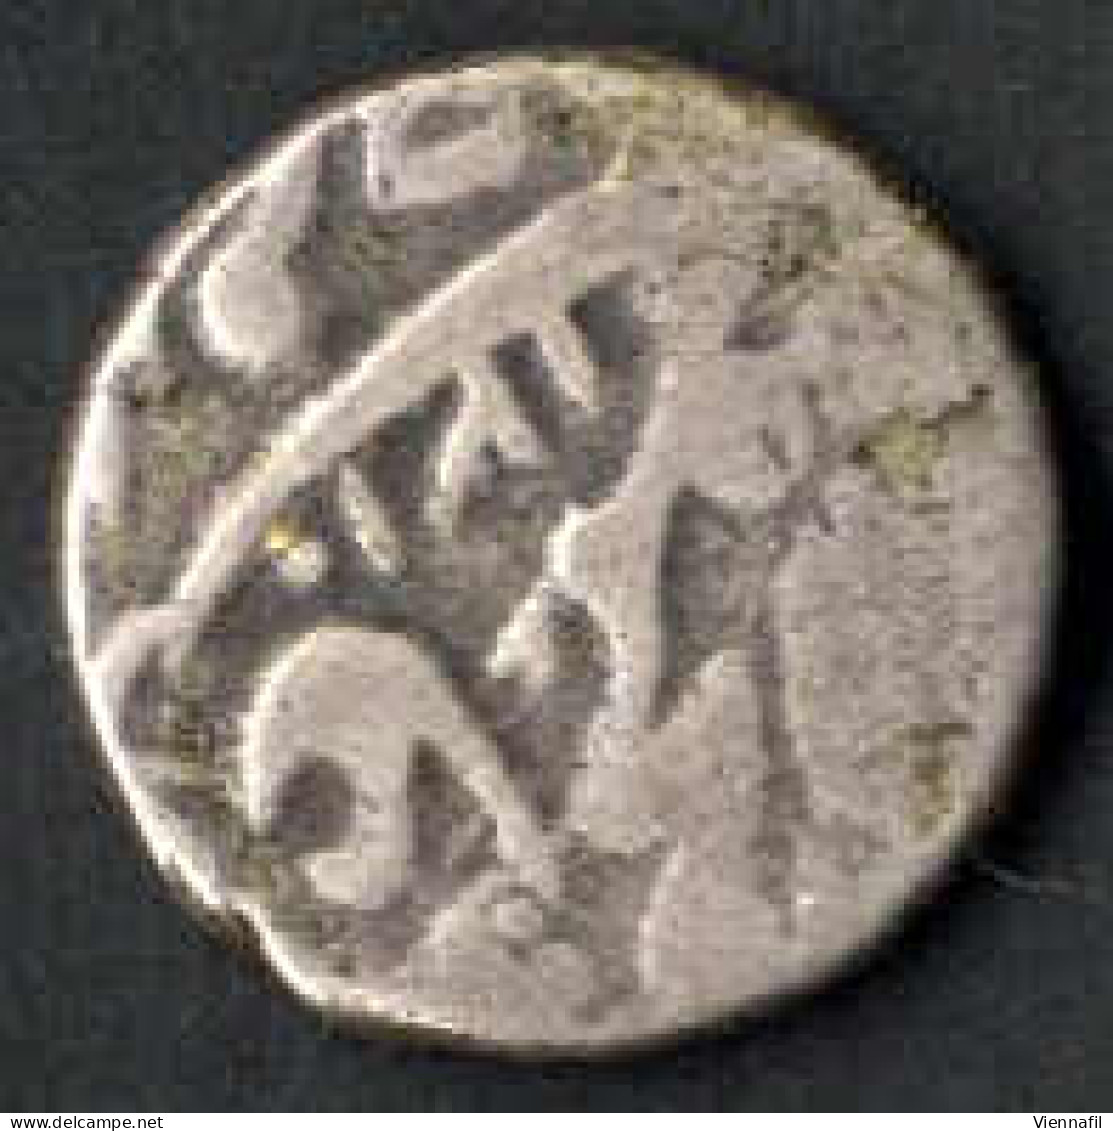 Russisch Turkestan Emirat Von Bukhara, Tenga Silber, 1299,1306,1310,1319 AH, Craig 91 Y 2, Sehr Schön-, 6 Stück - Usbekistan